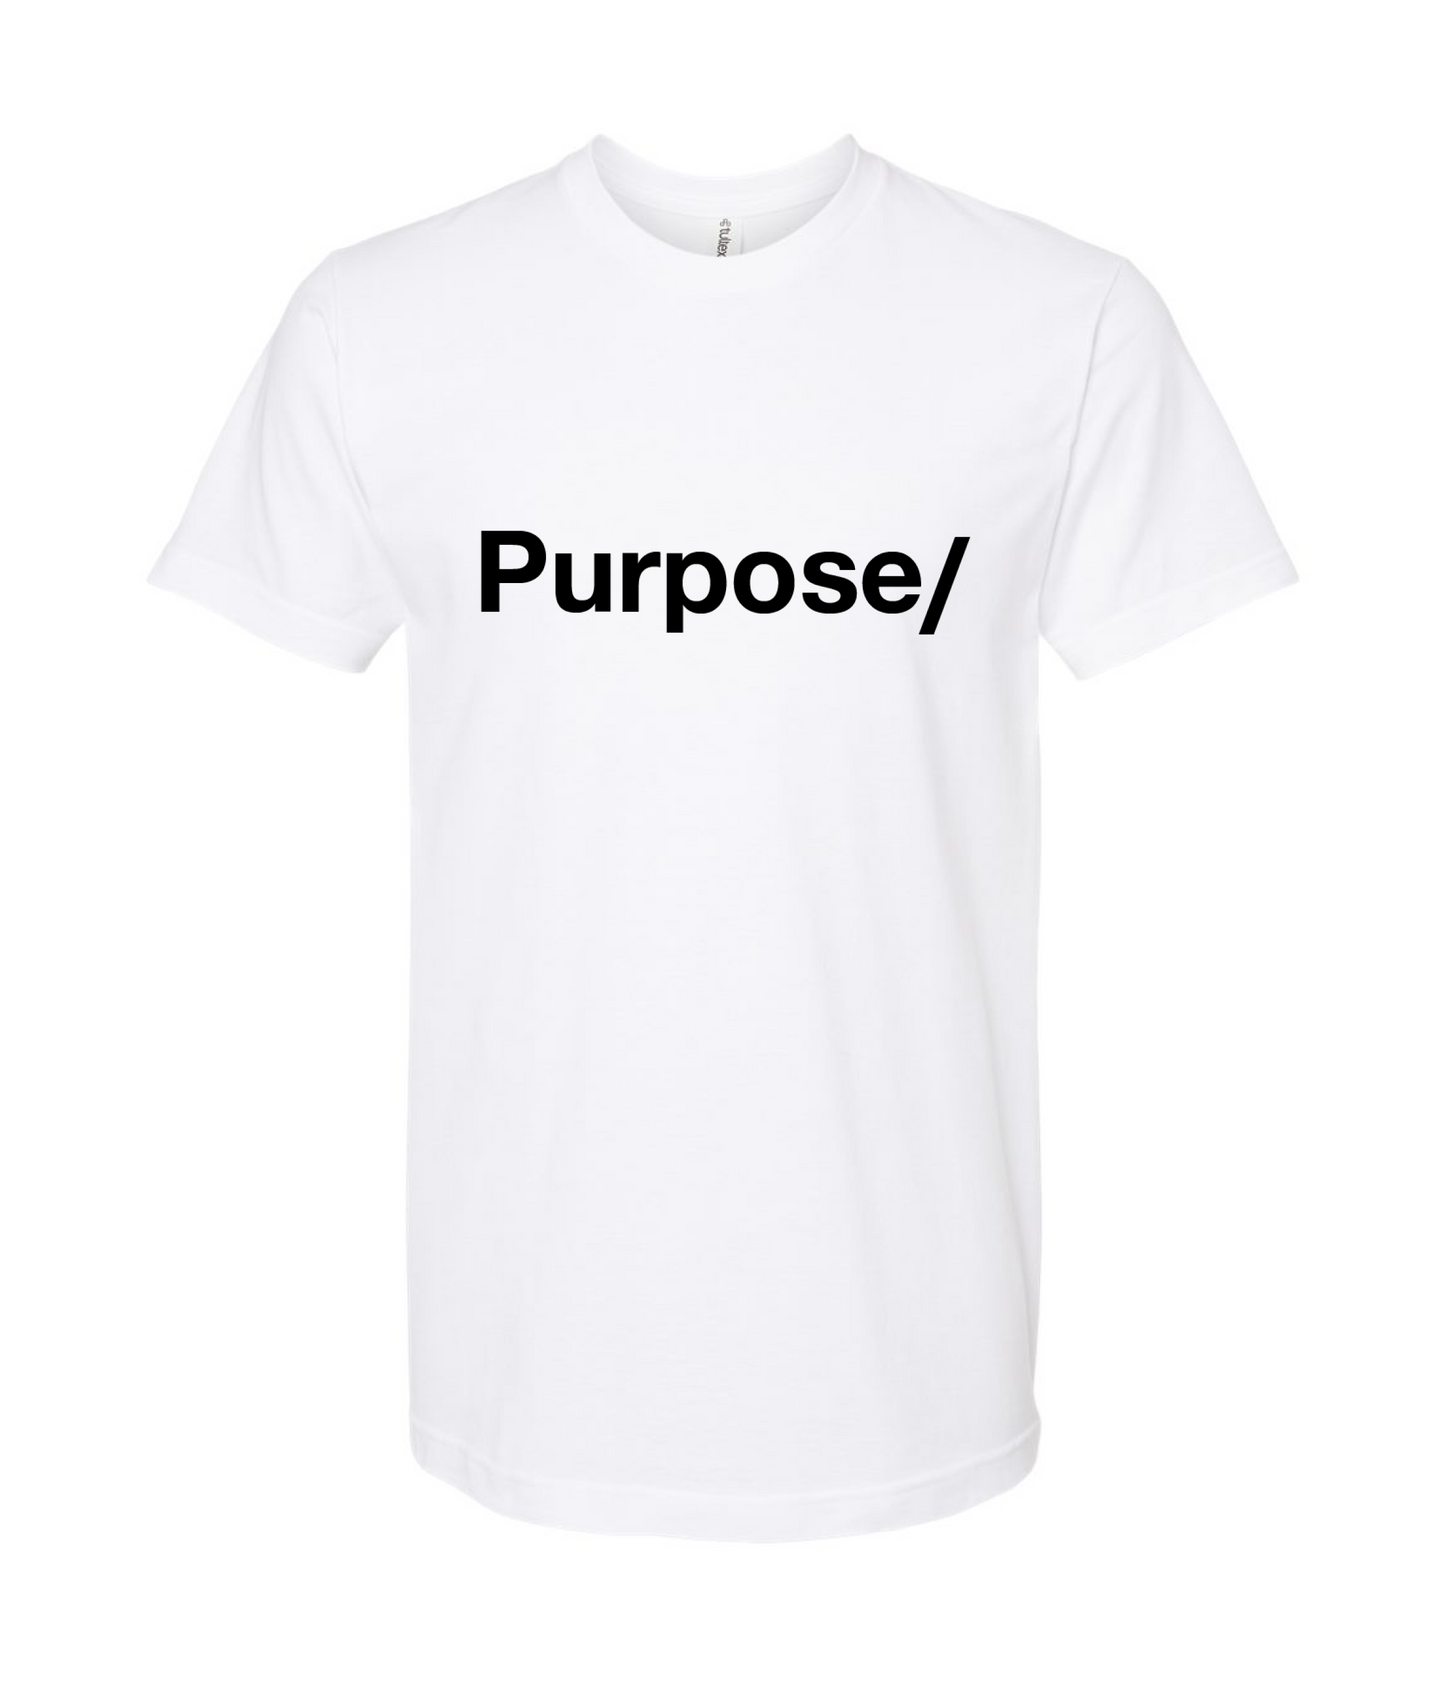 Purpose/ - Purpose/ - White T Shirt